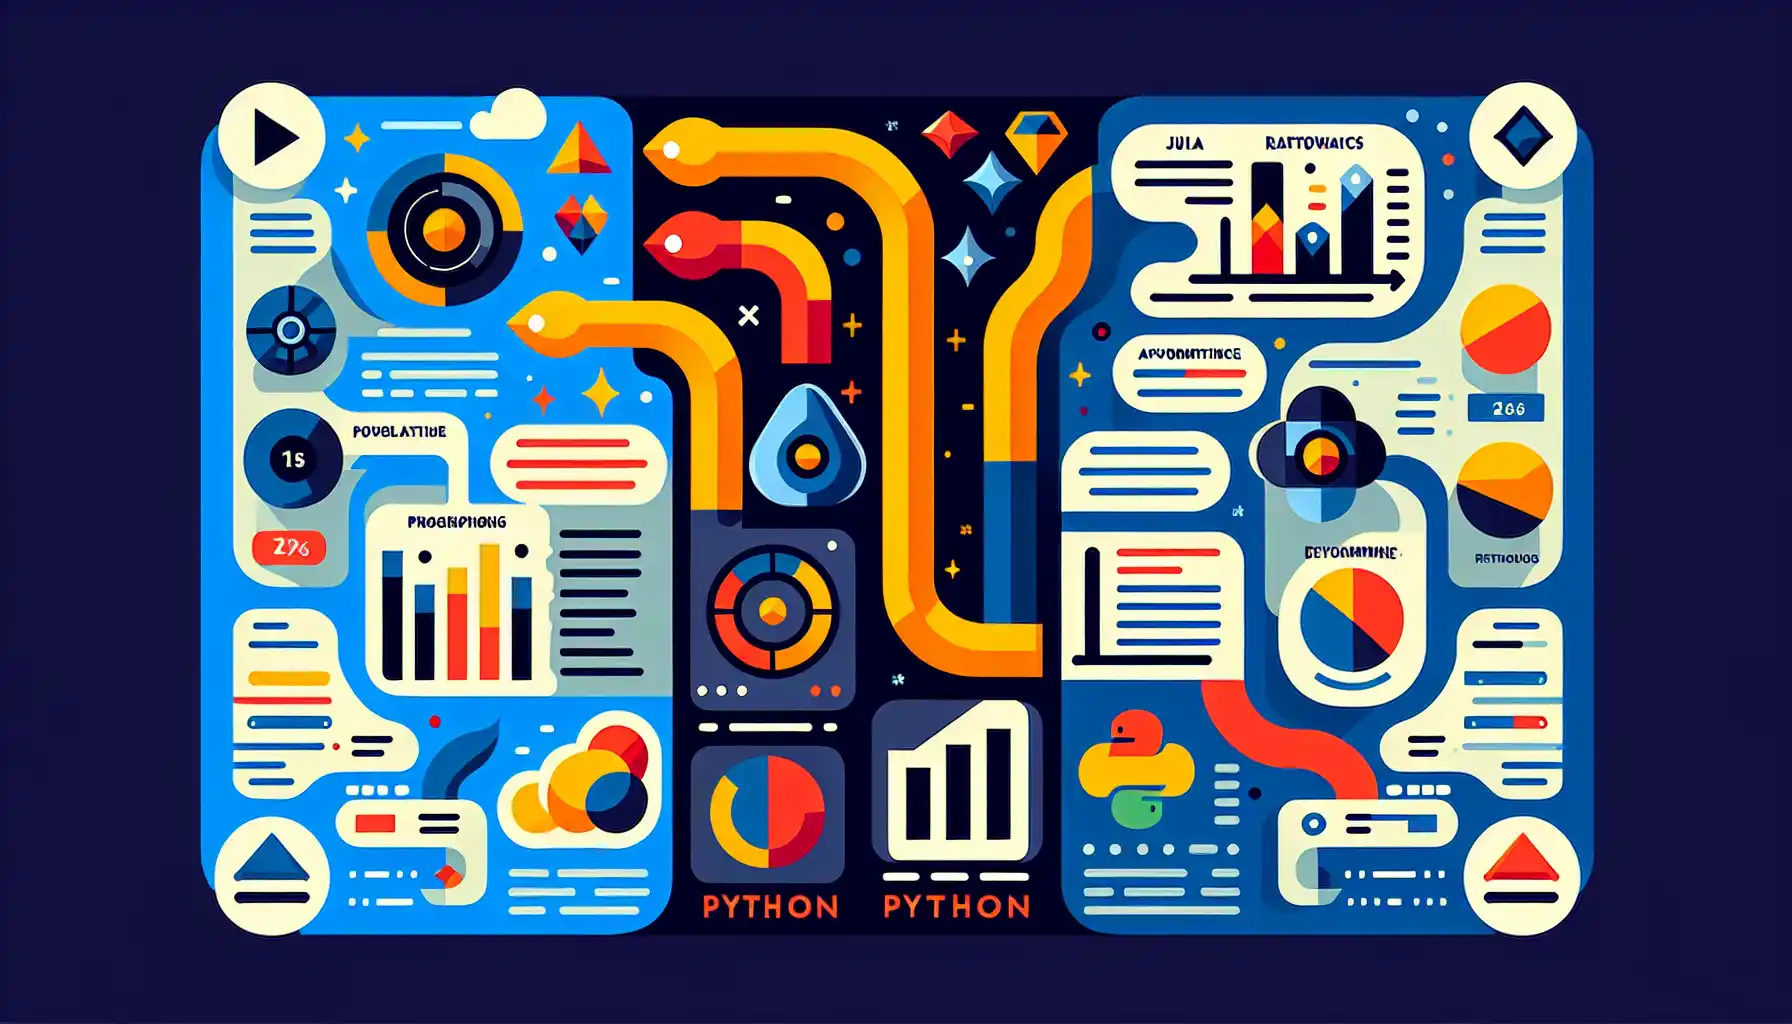 Julia vs. Python and R